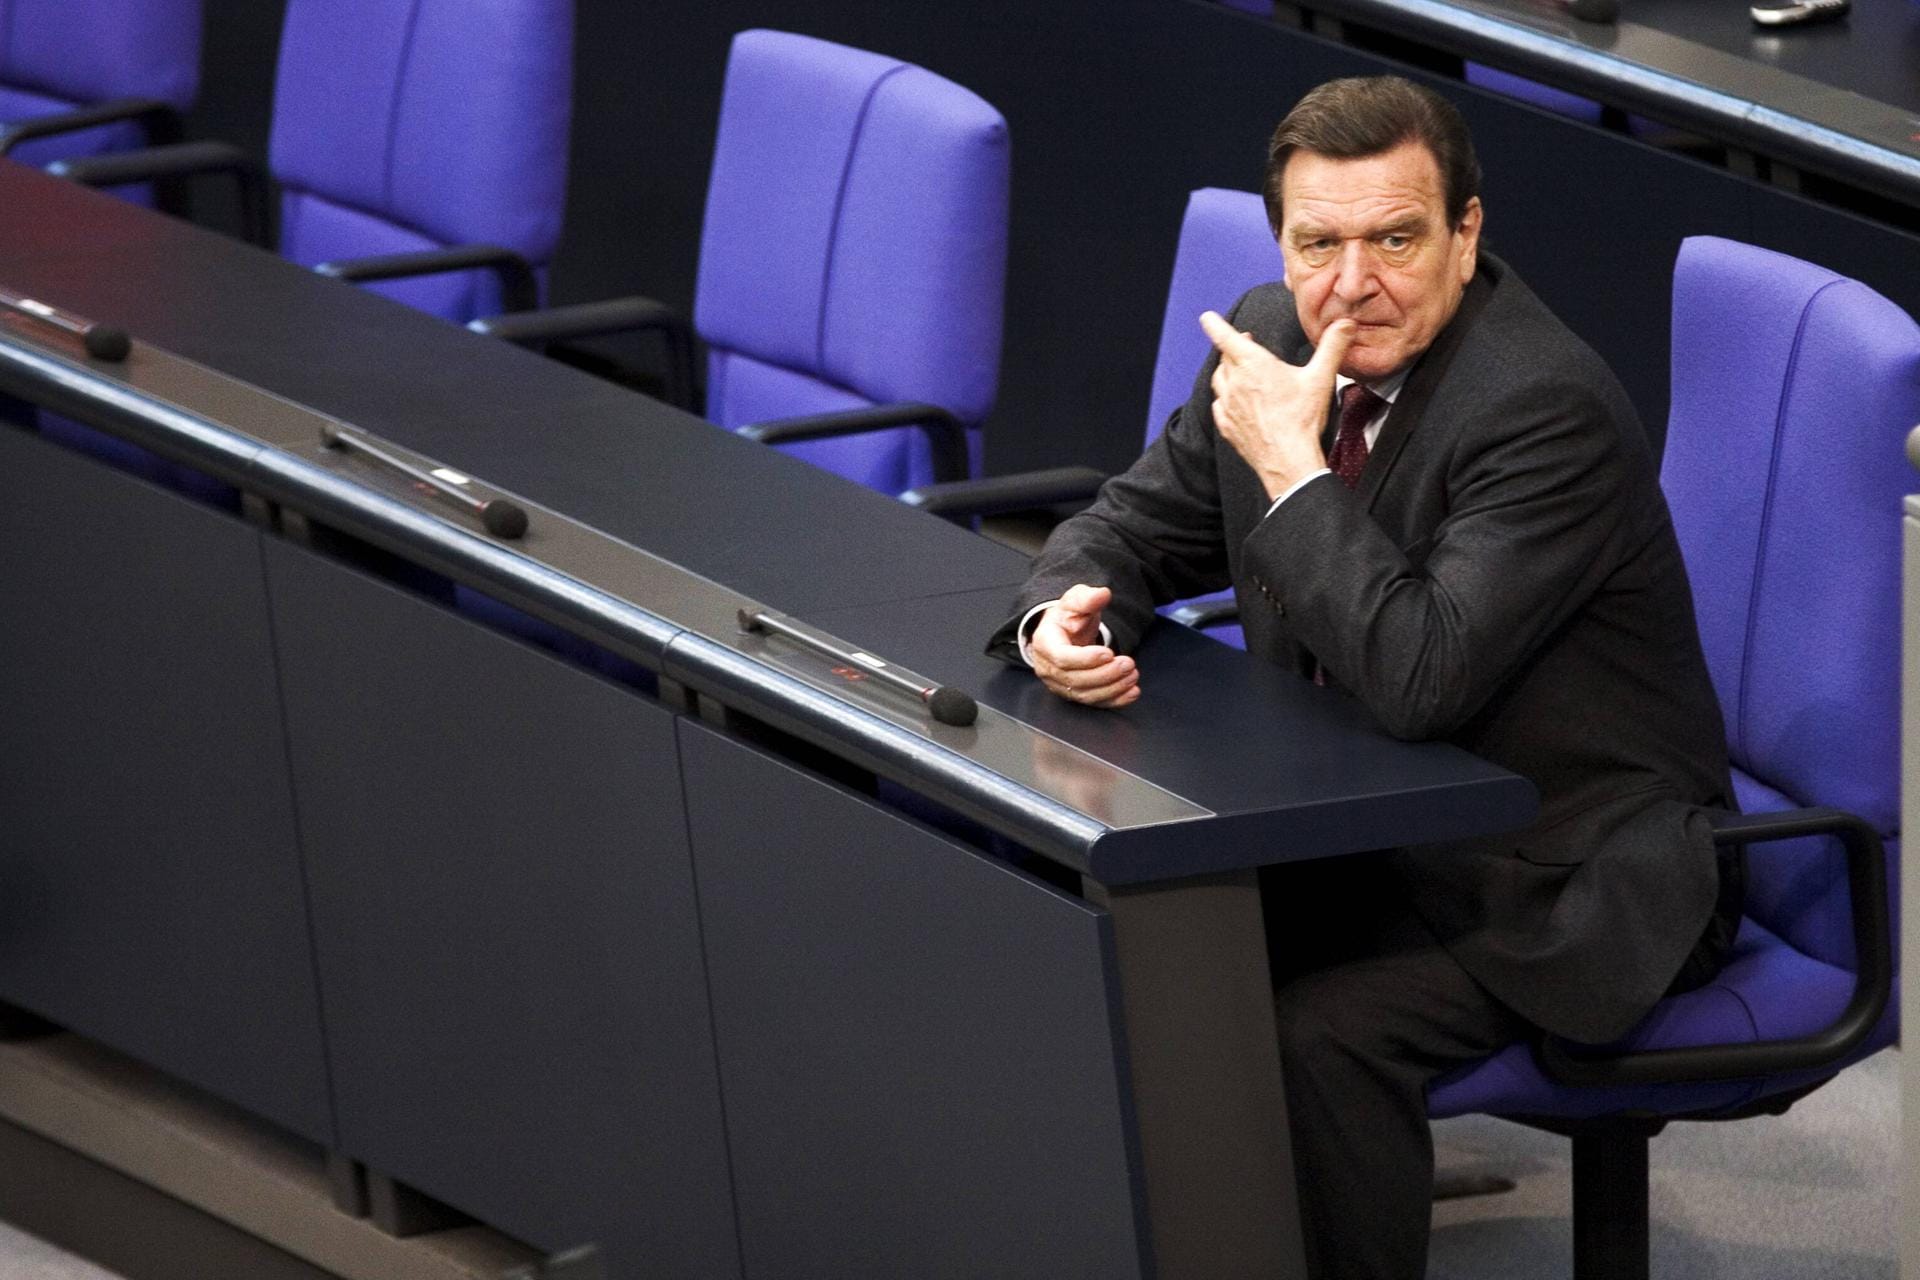 Juli 2005: Nachdem die SPD in ihrem Stammland NRW die Regierungsmehrheit verloren hat, sieht Schröder seine Kanzlerschaft in Gefahr. Er stellt die Vertrauensfrage und verliert. Der Bundestag wird aufgelöst, es gibt Neuwahlen.